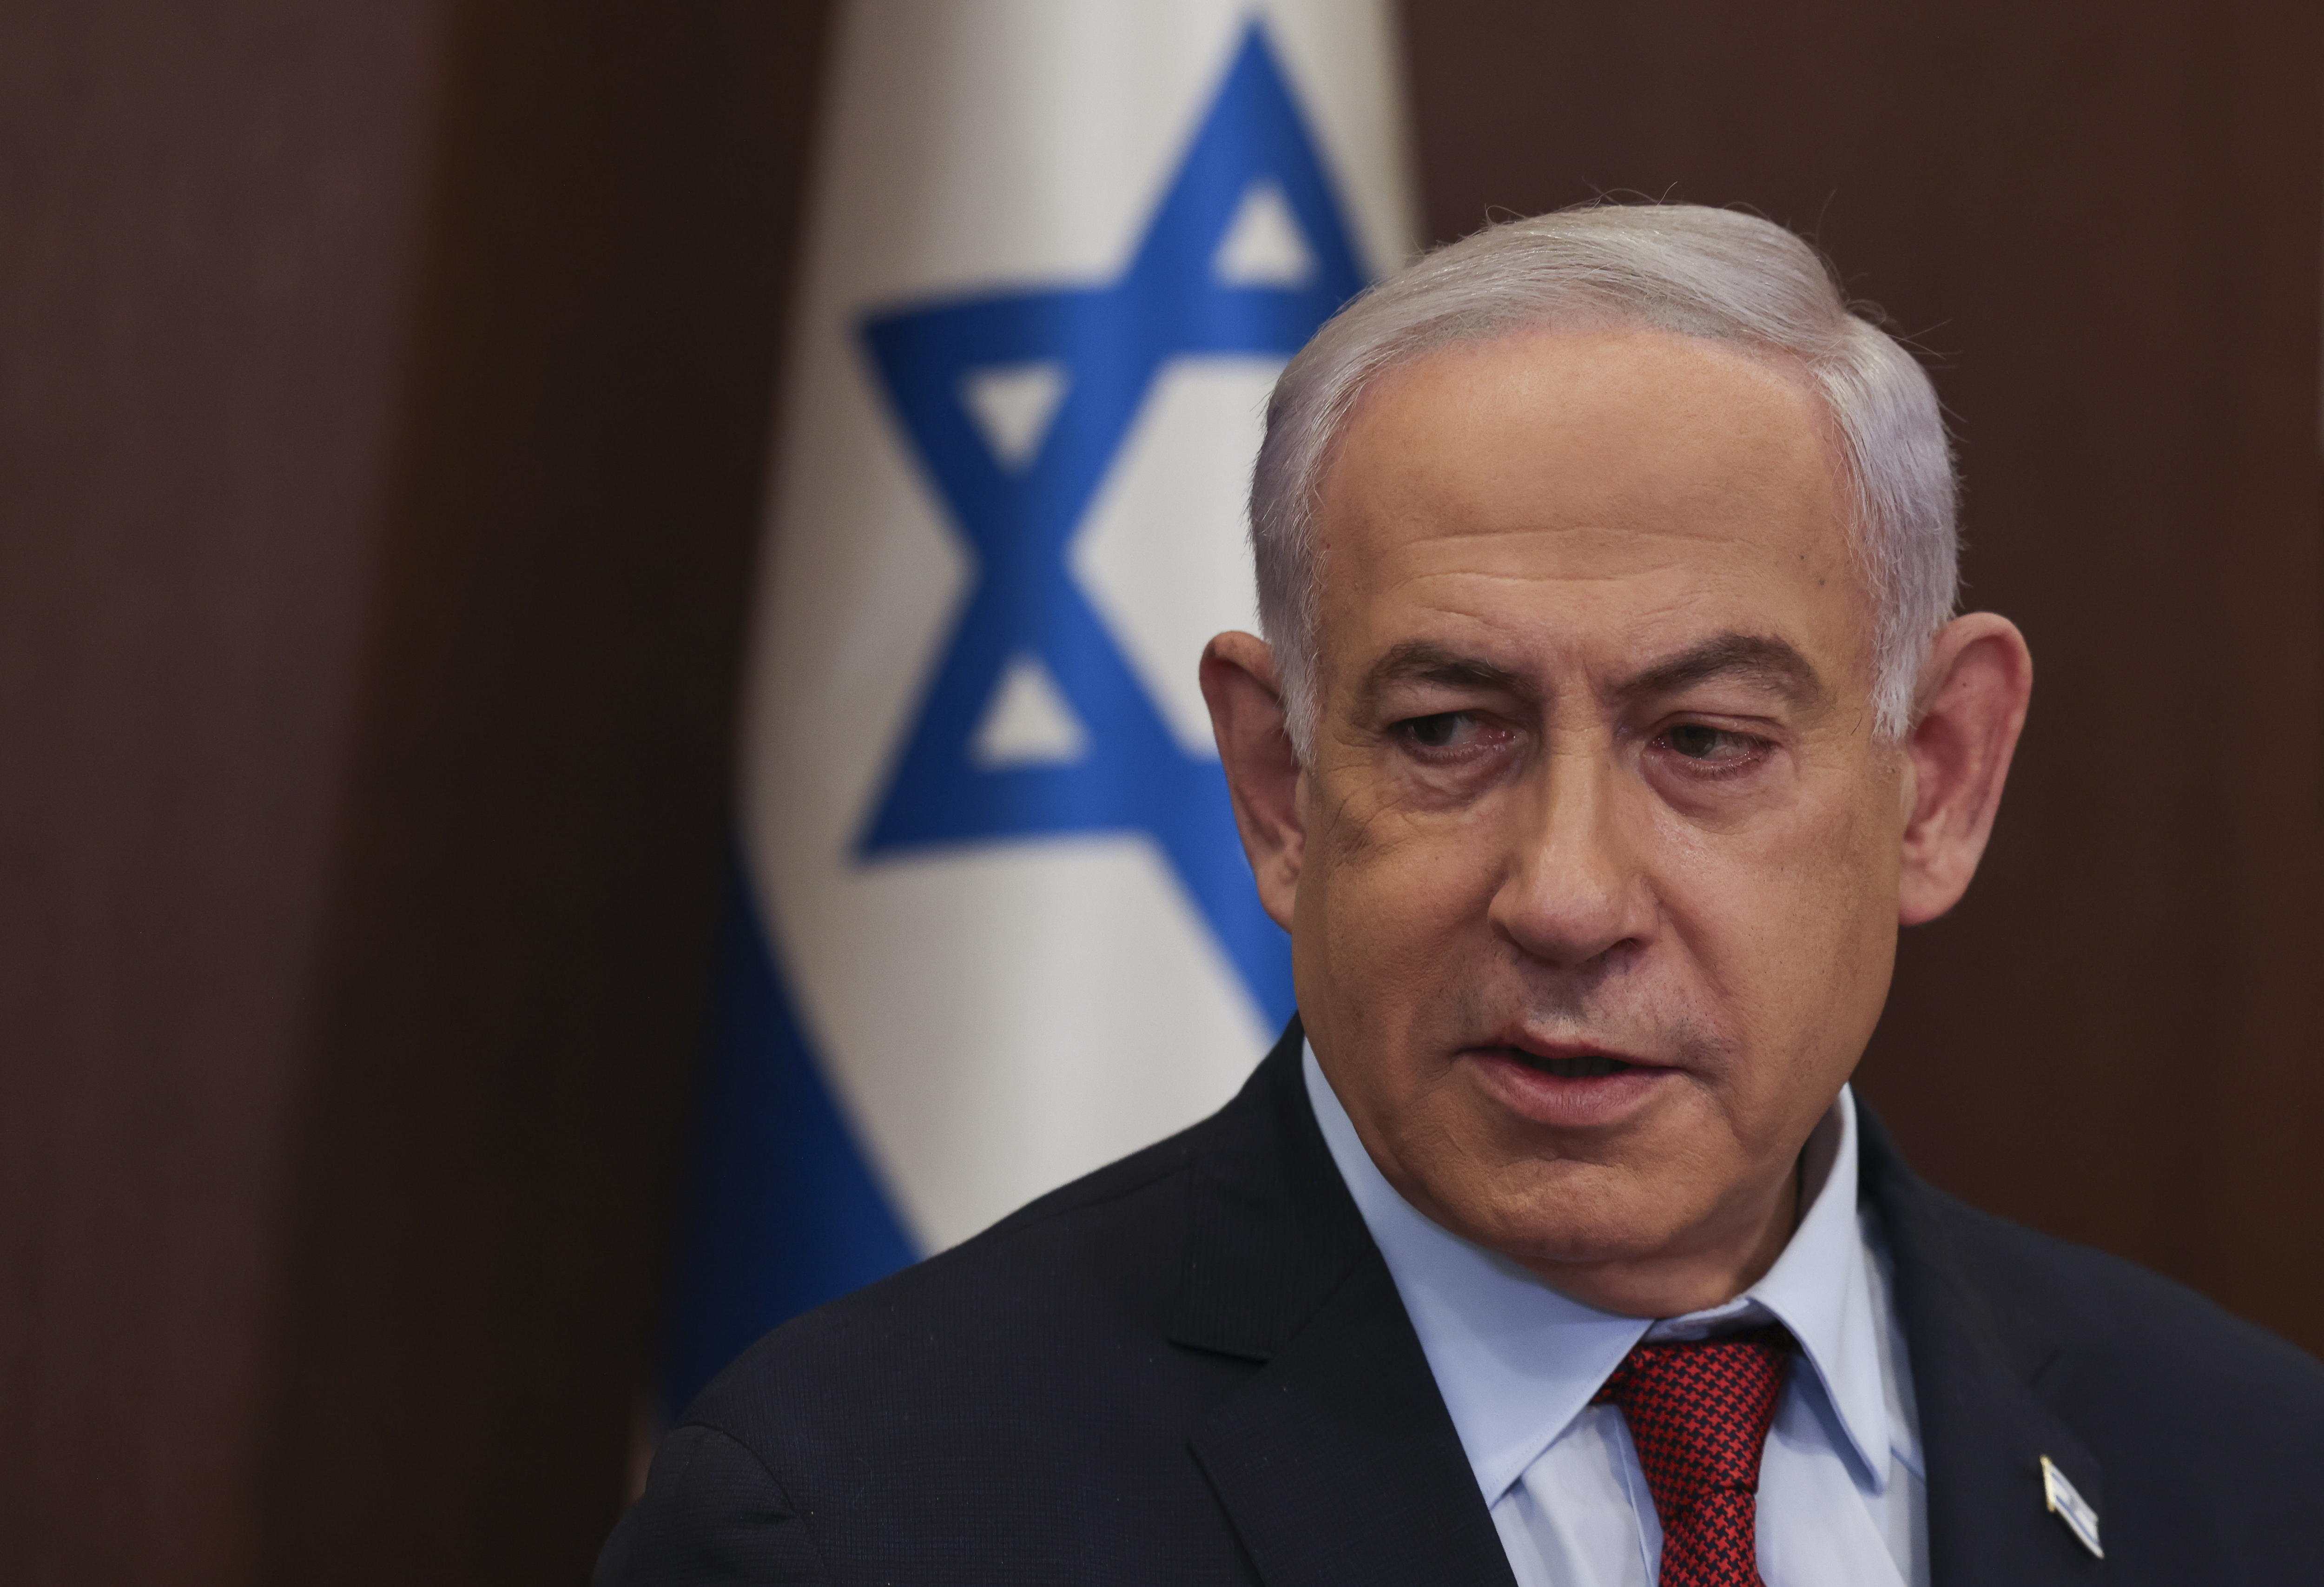 Netanyahu desafía a la Corte Internacional de Justicia: "No nos detendremos hasta la victoria"